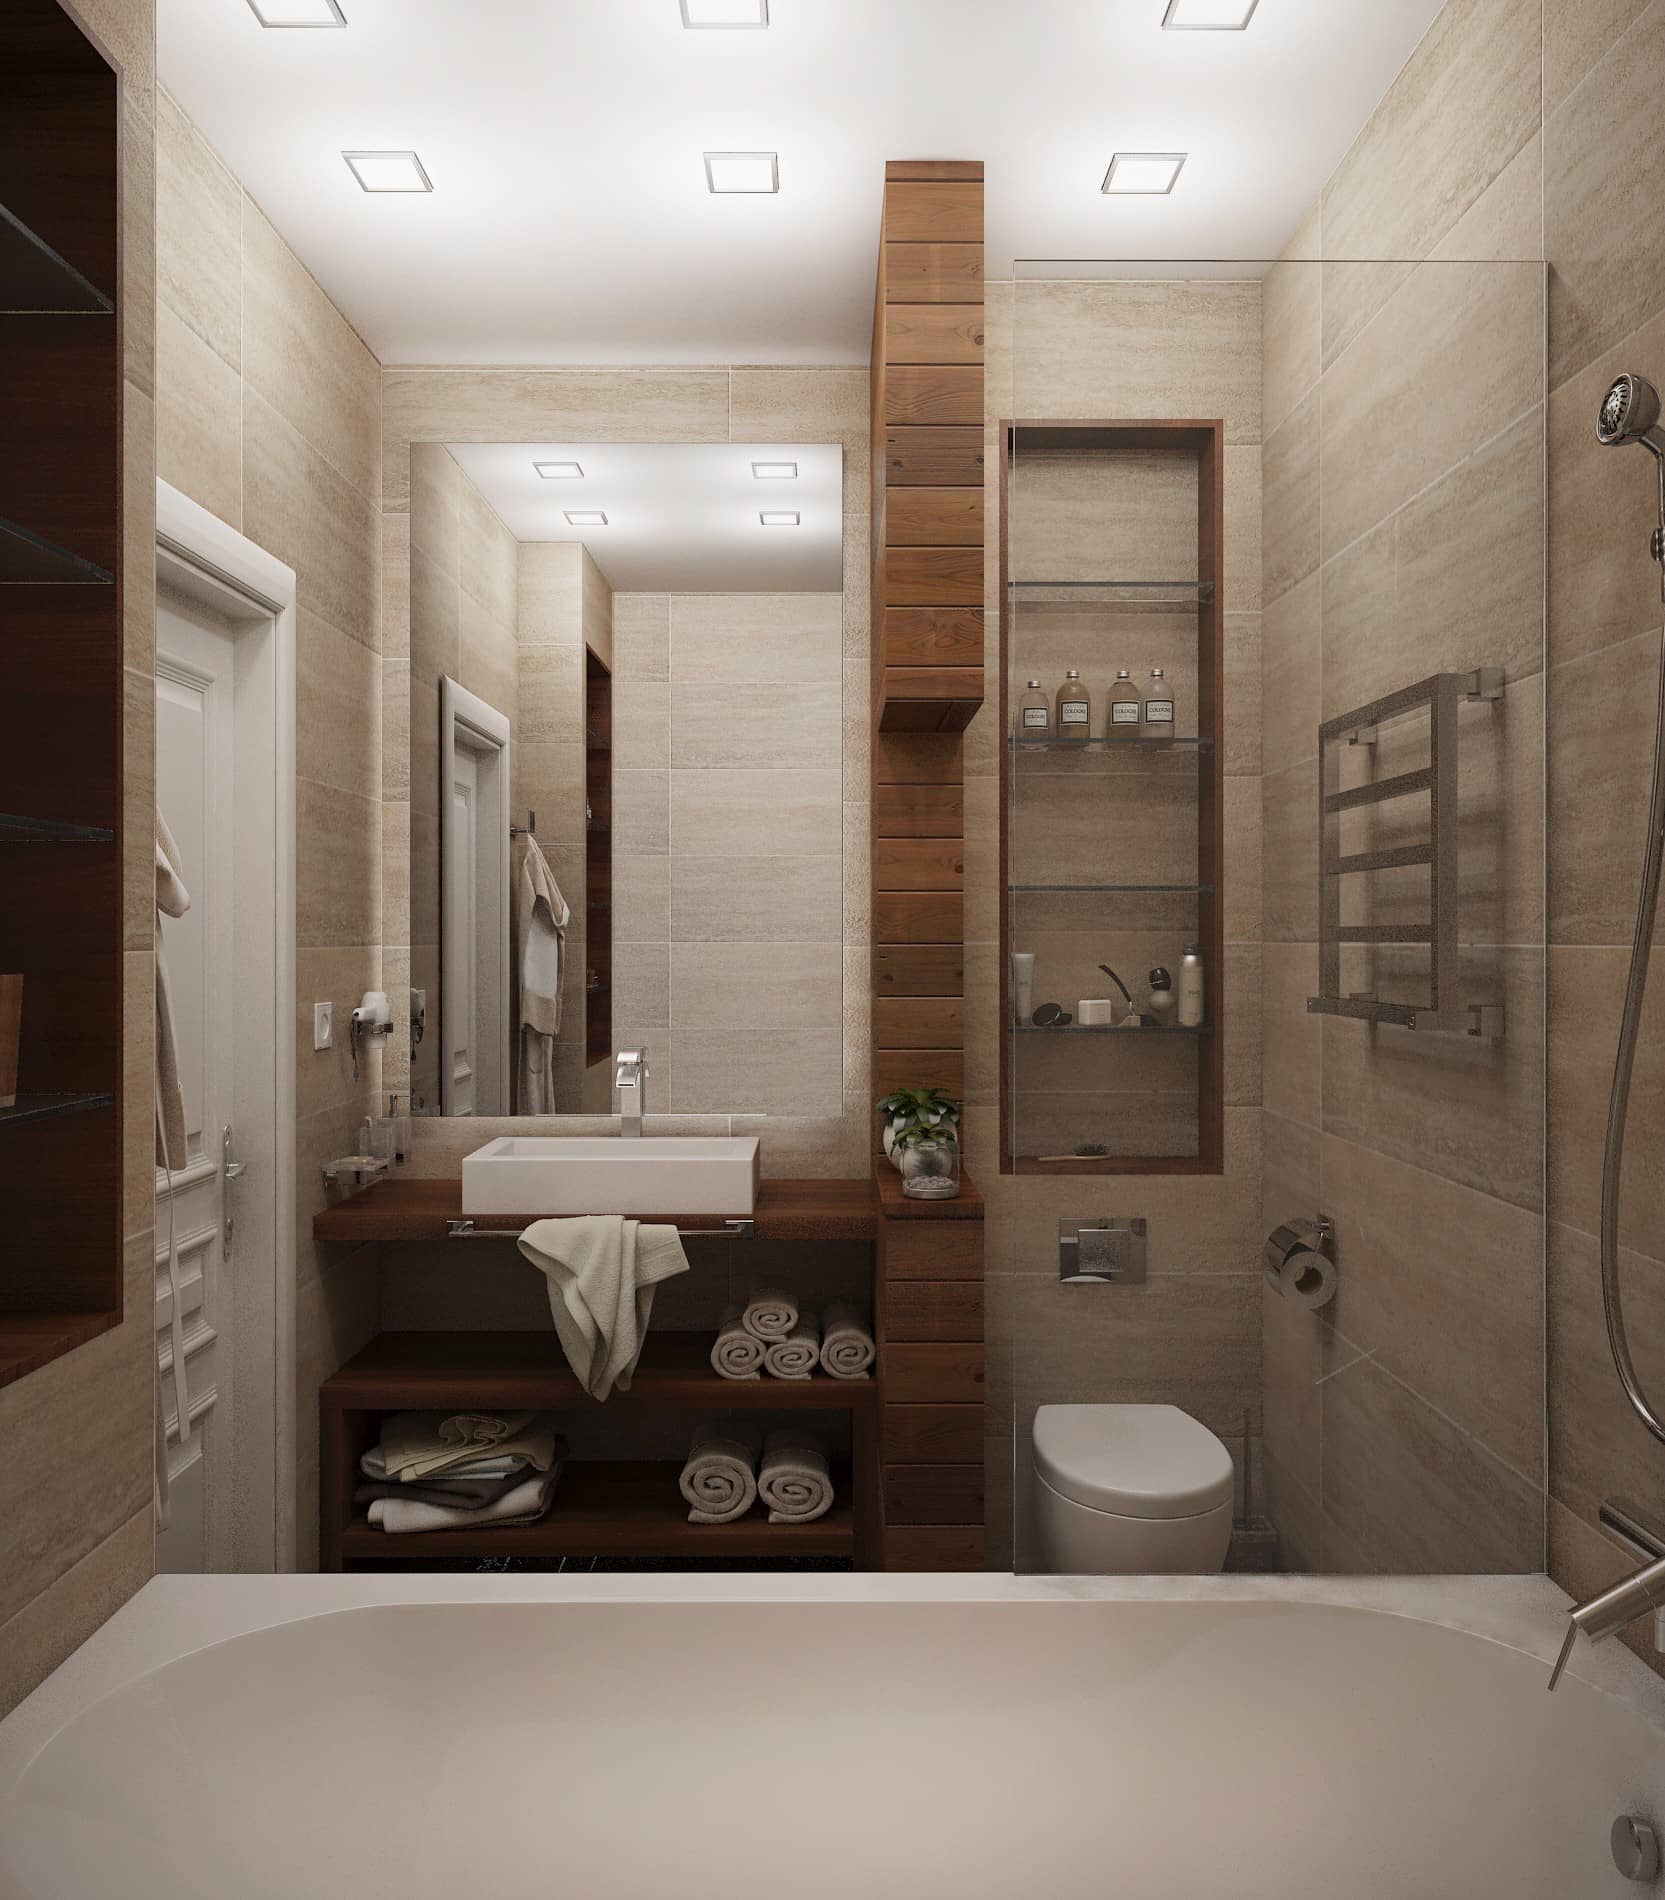 Прямоугольное зеркало современного стиля для ванной комнаты